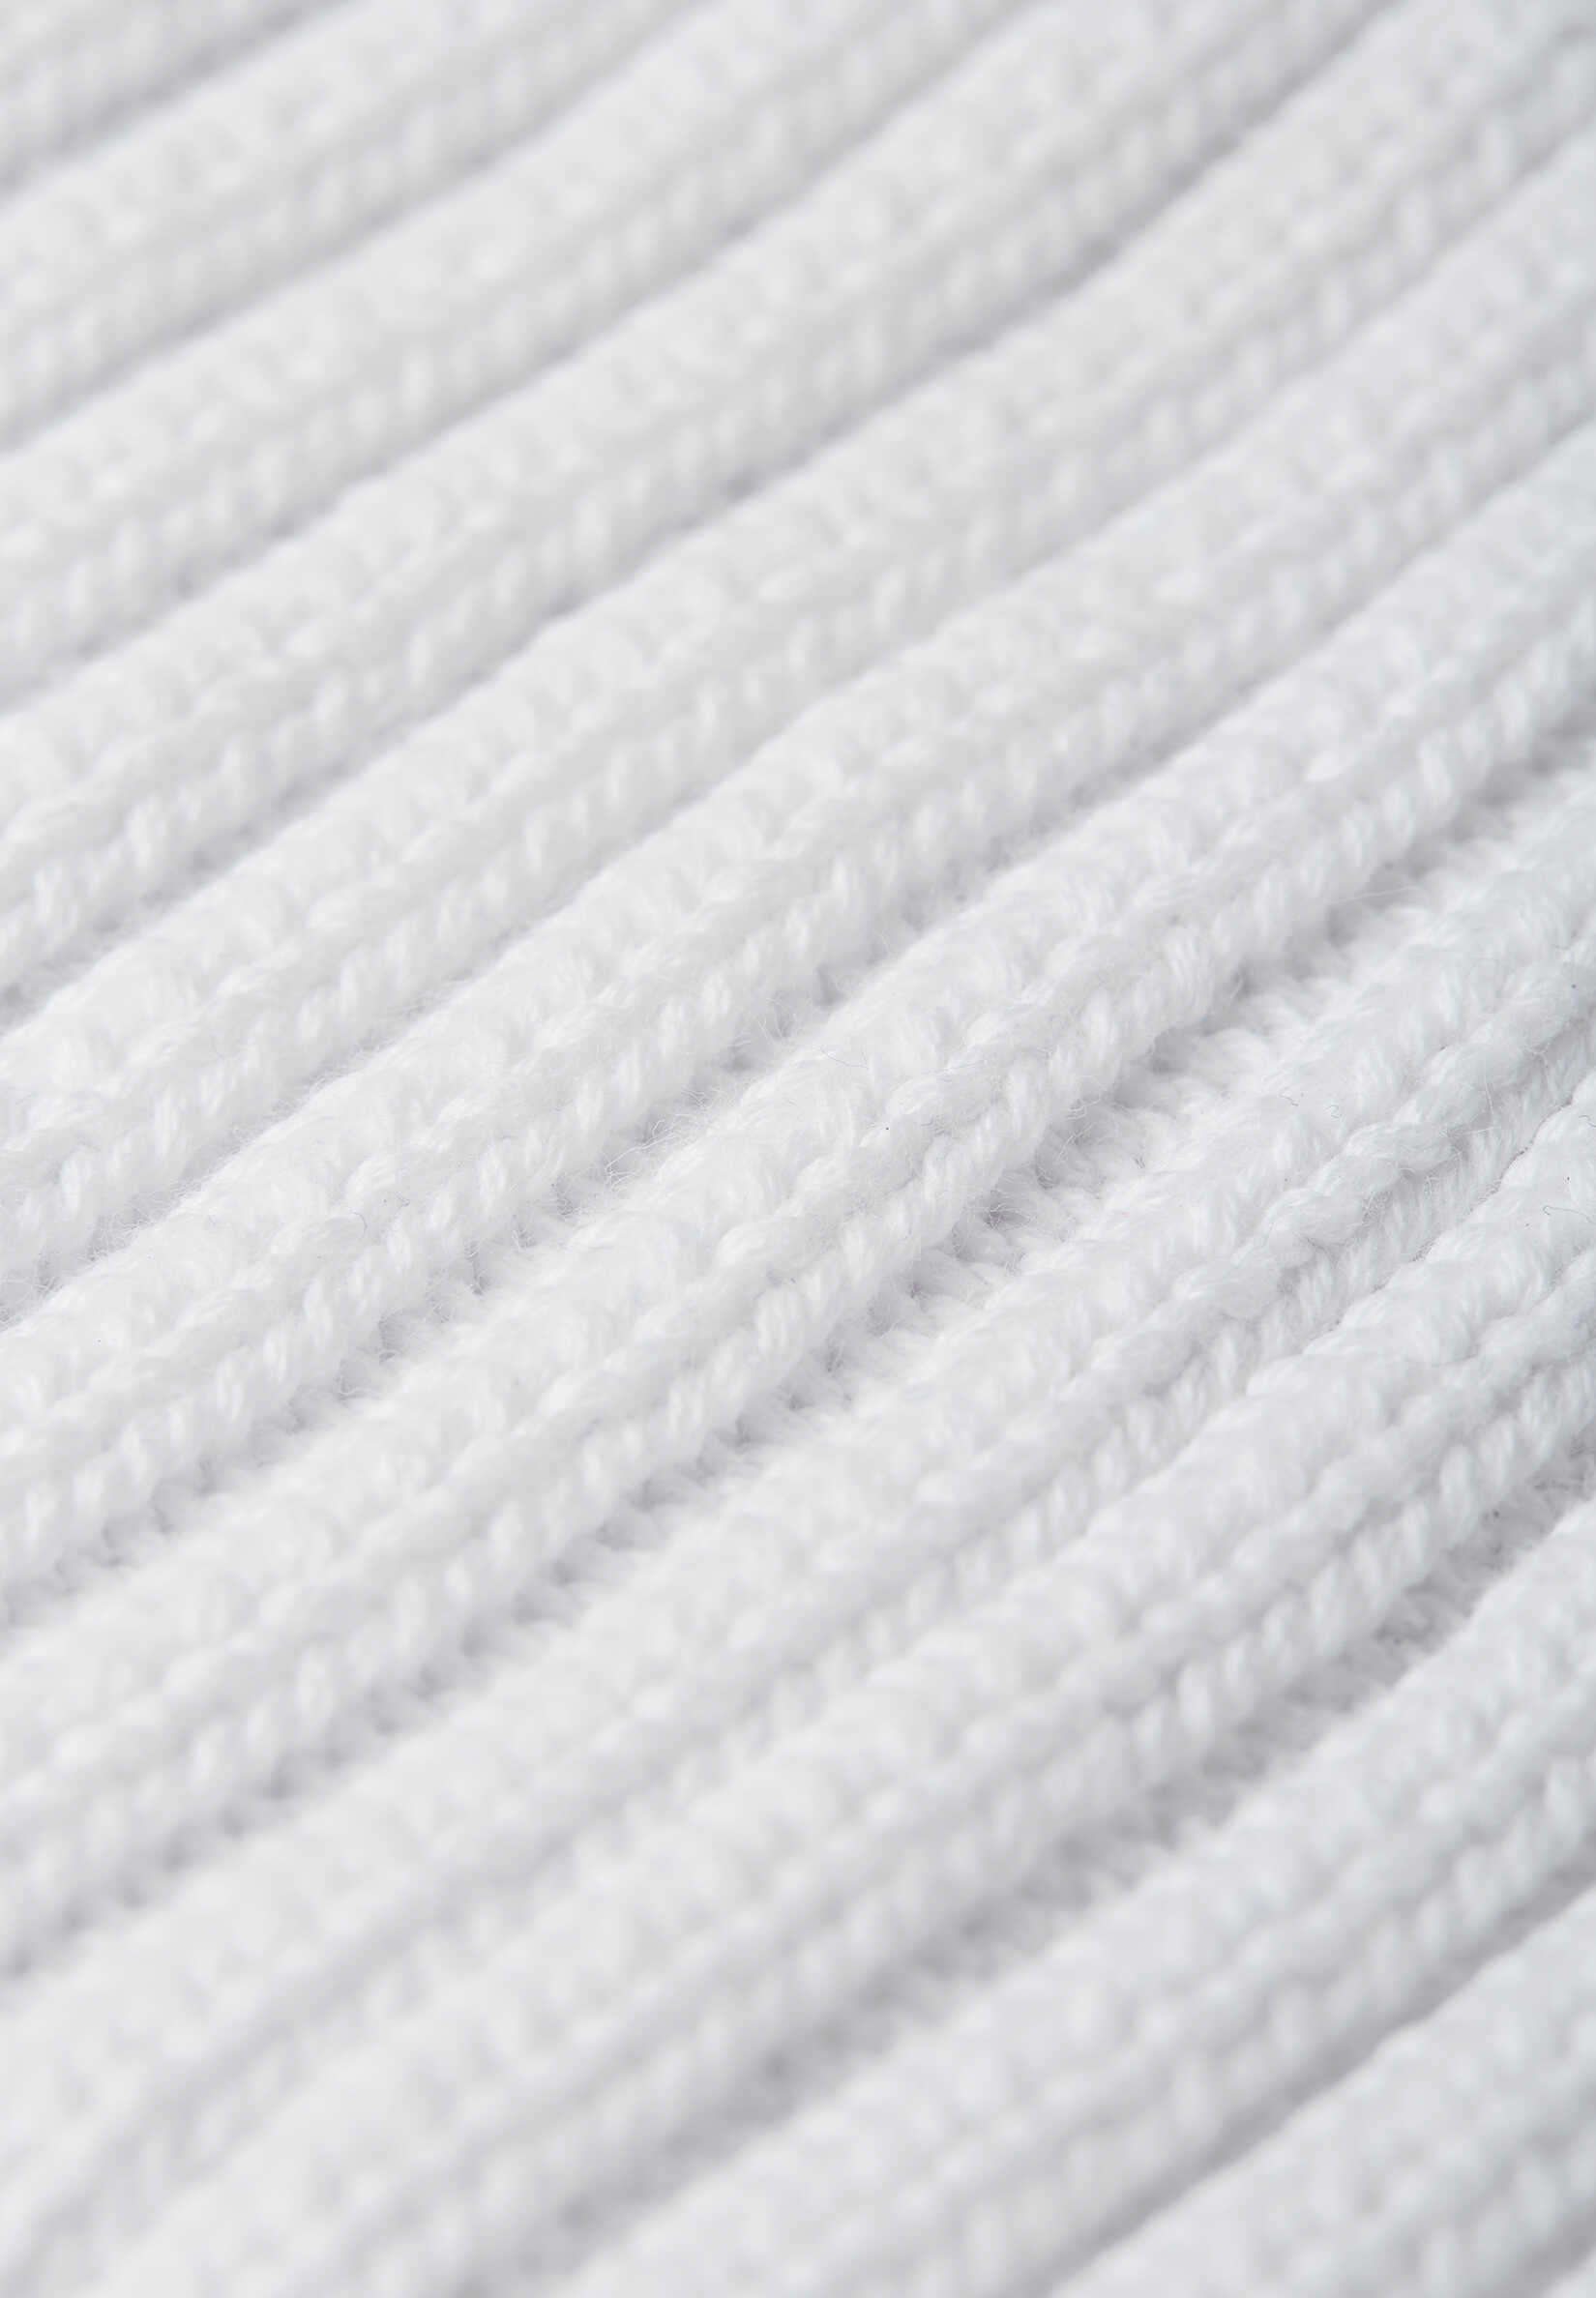 Reima Hattara white biela dievcenska ciapka bavlnena